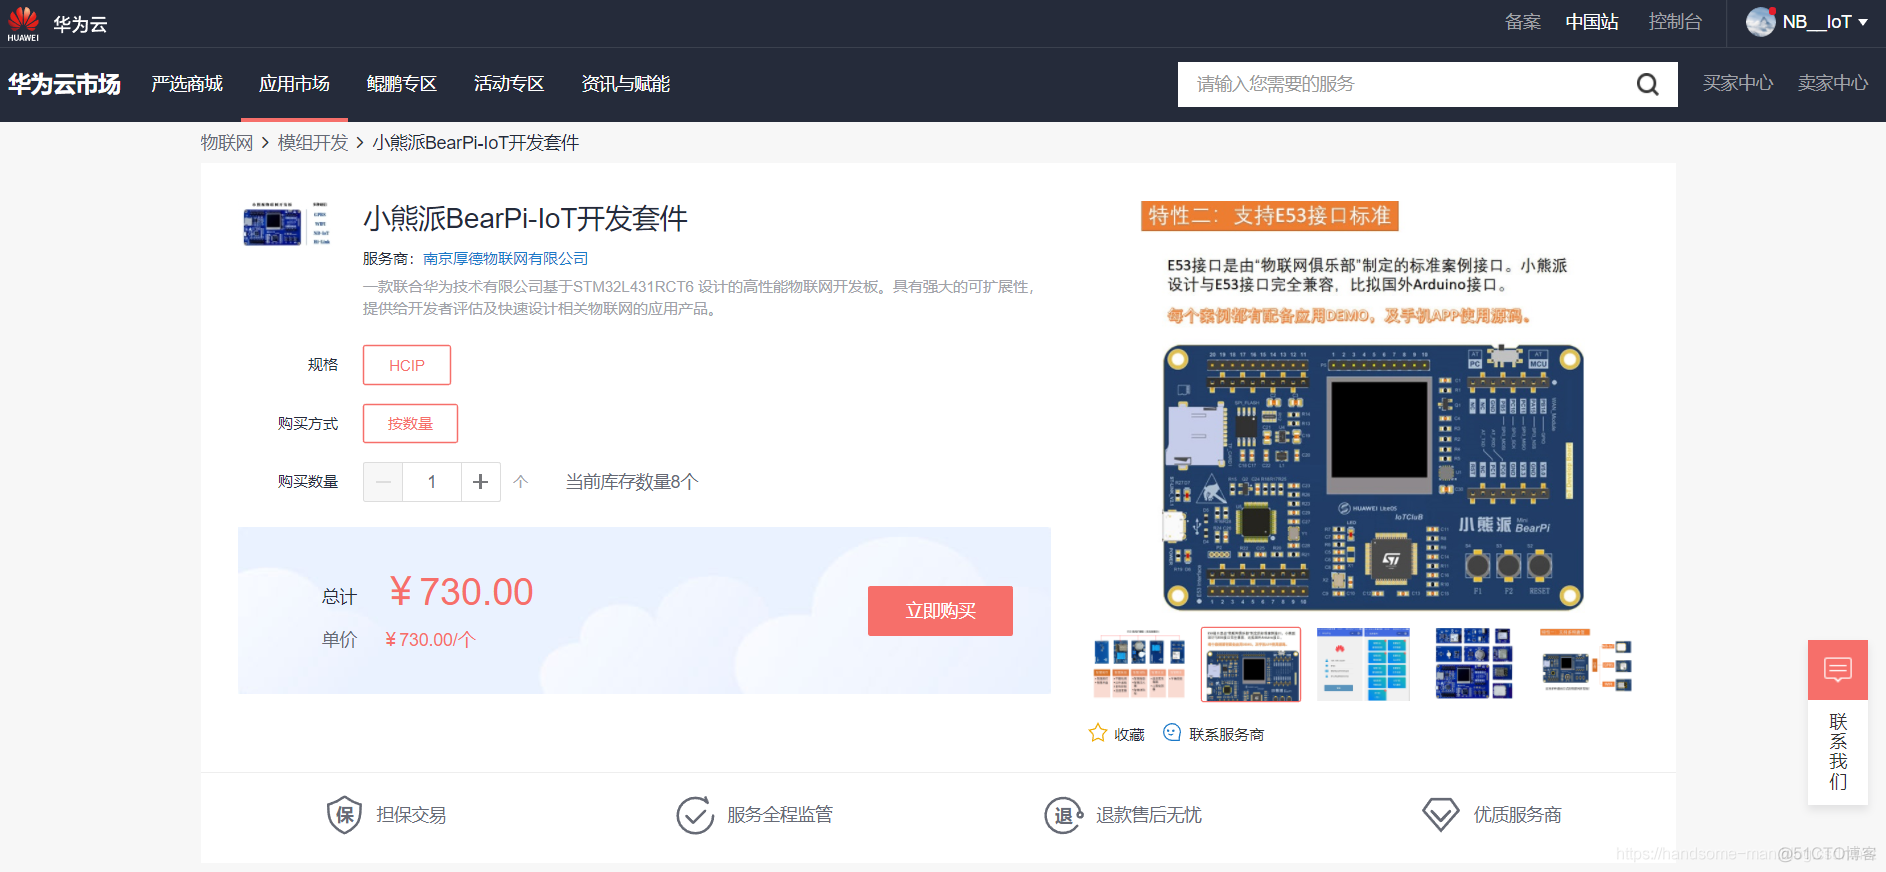 华为认证物联网开发利器：小熊派IoT开发板_物联网